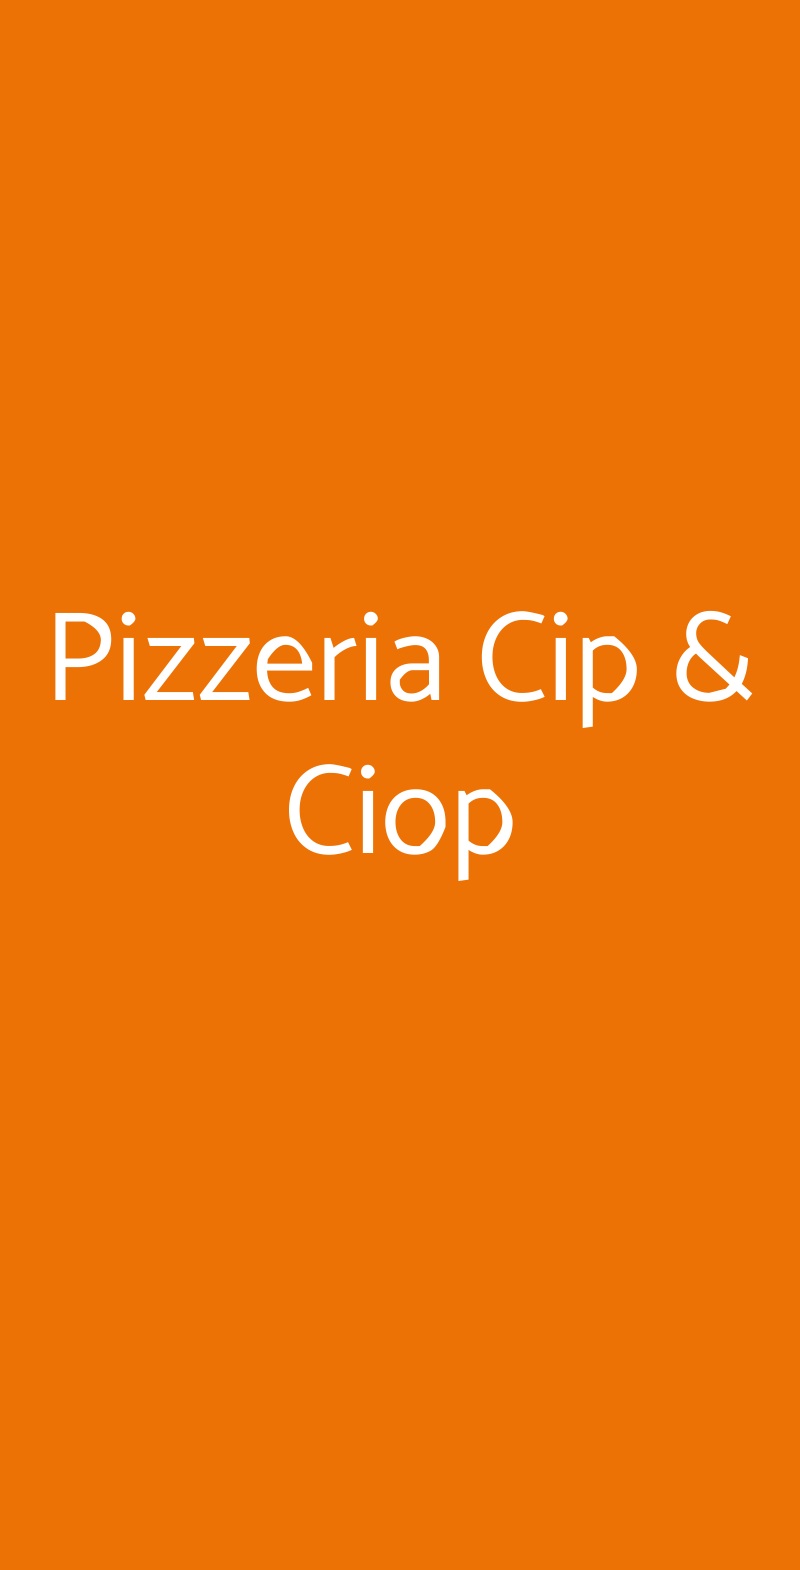 Pizzeria Cip & Ciop Porto San Giorgio menù 1 pagina